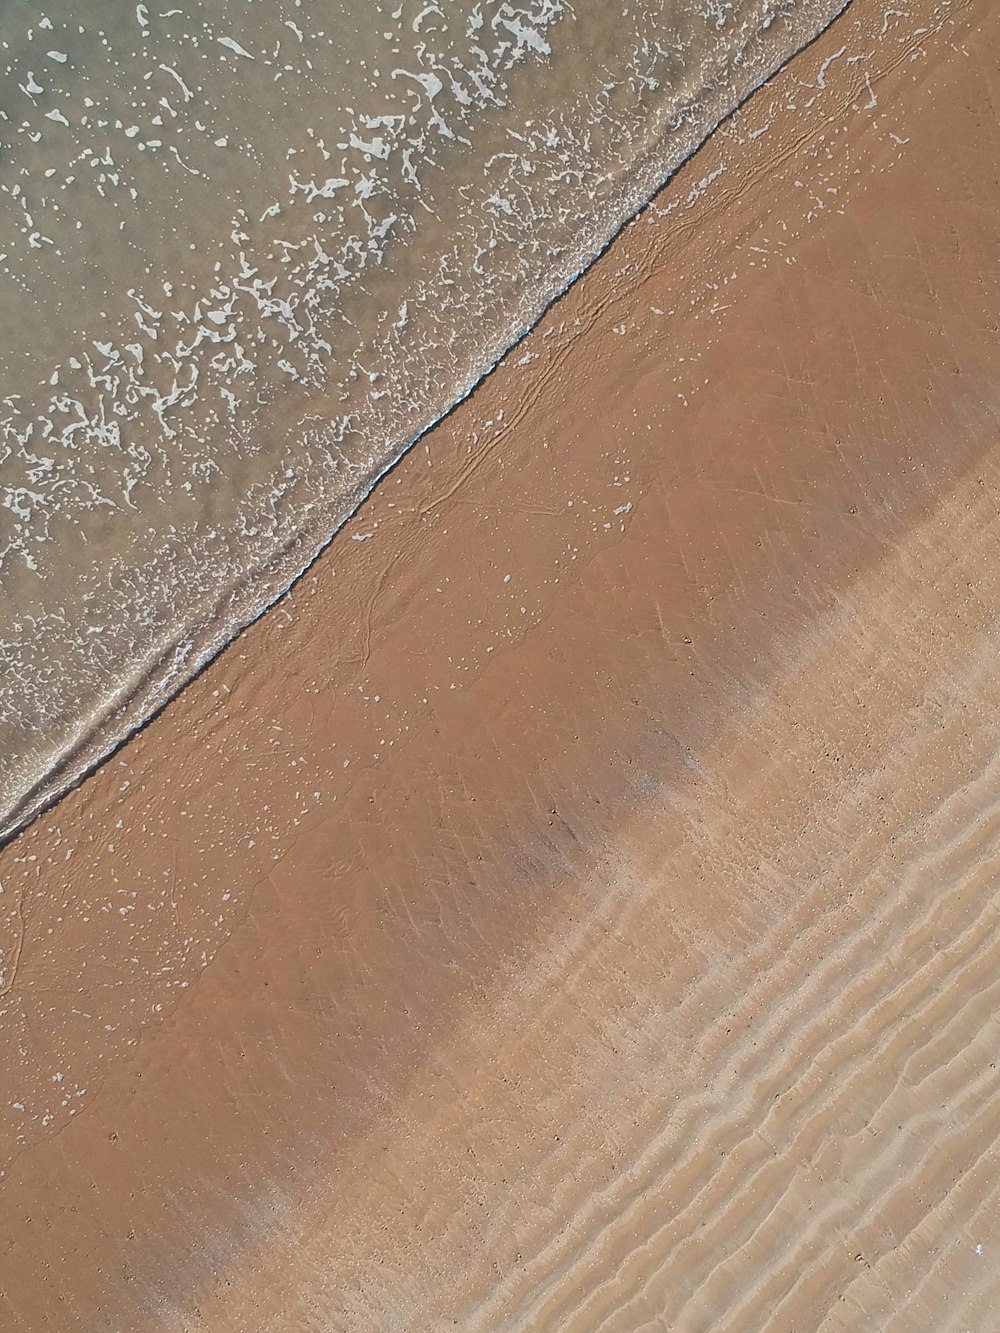 Fotografía aérea de la orilla del mar durante el día